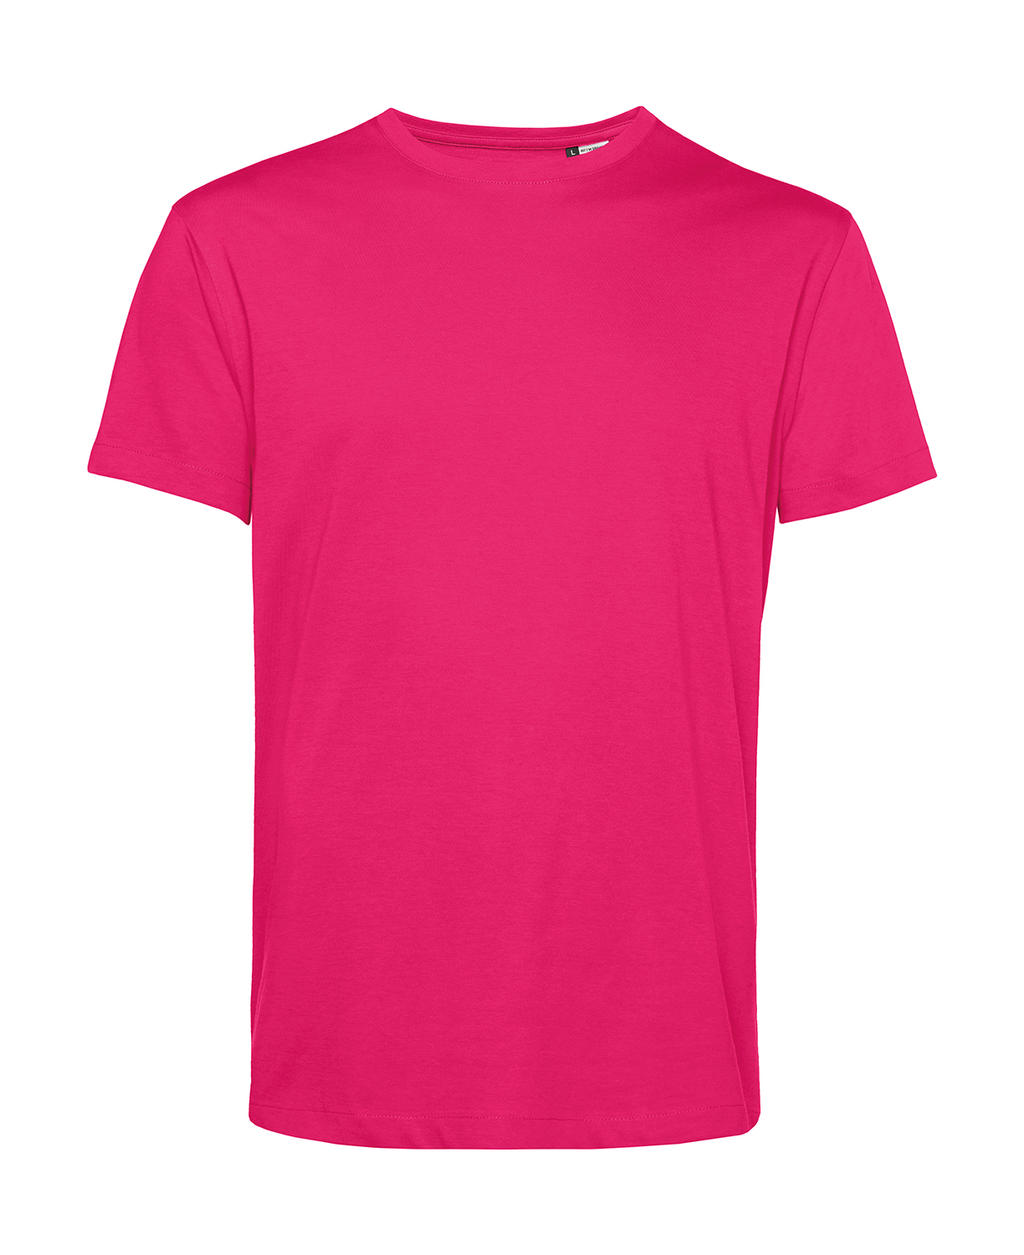 Tričko BC Organic Inspire E150 - tmavě růžové, L